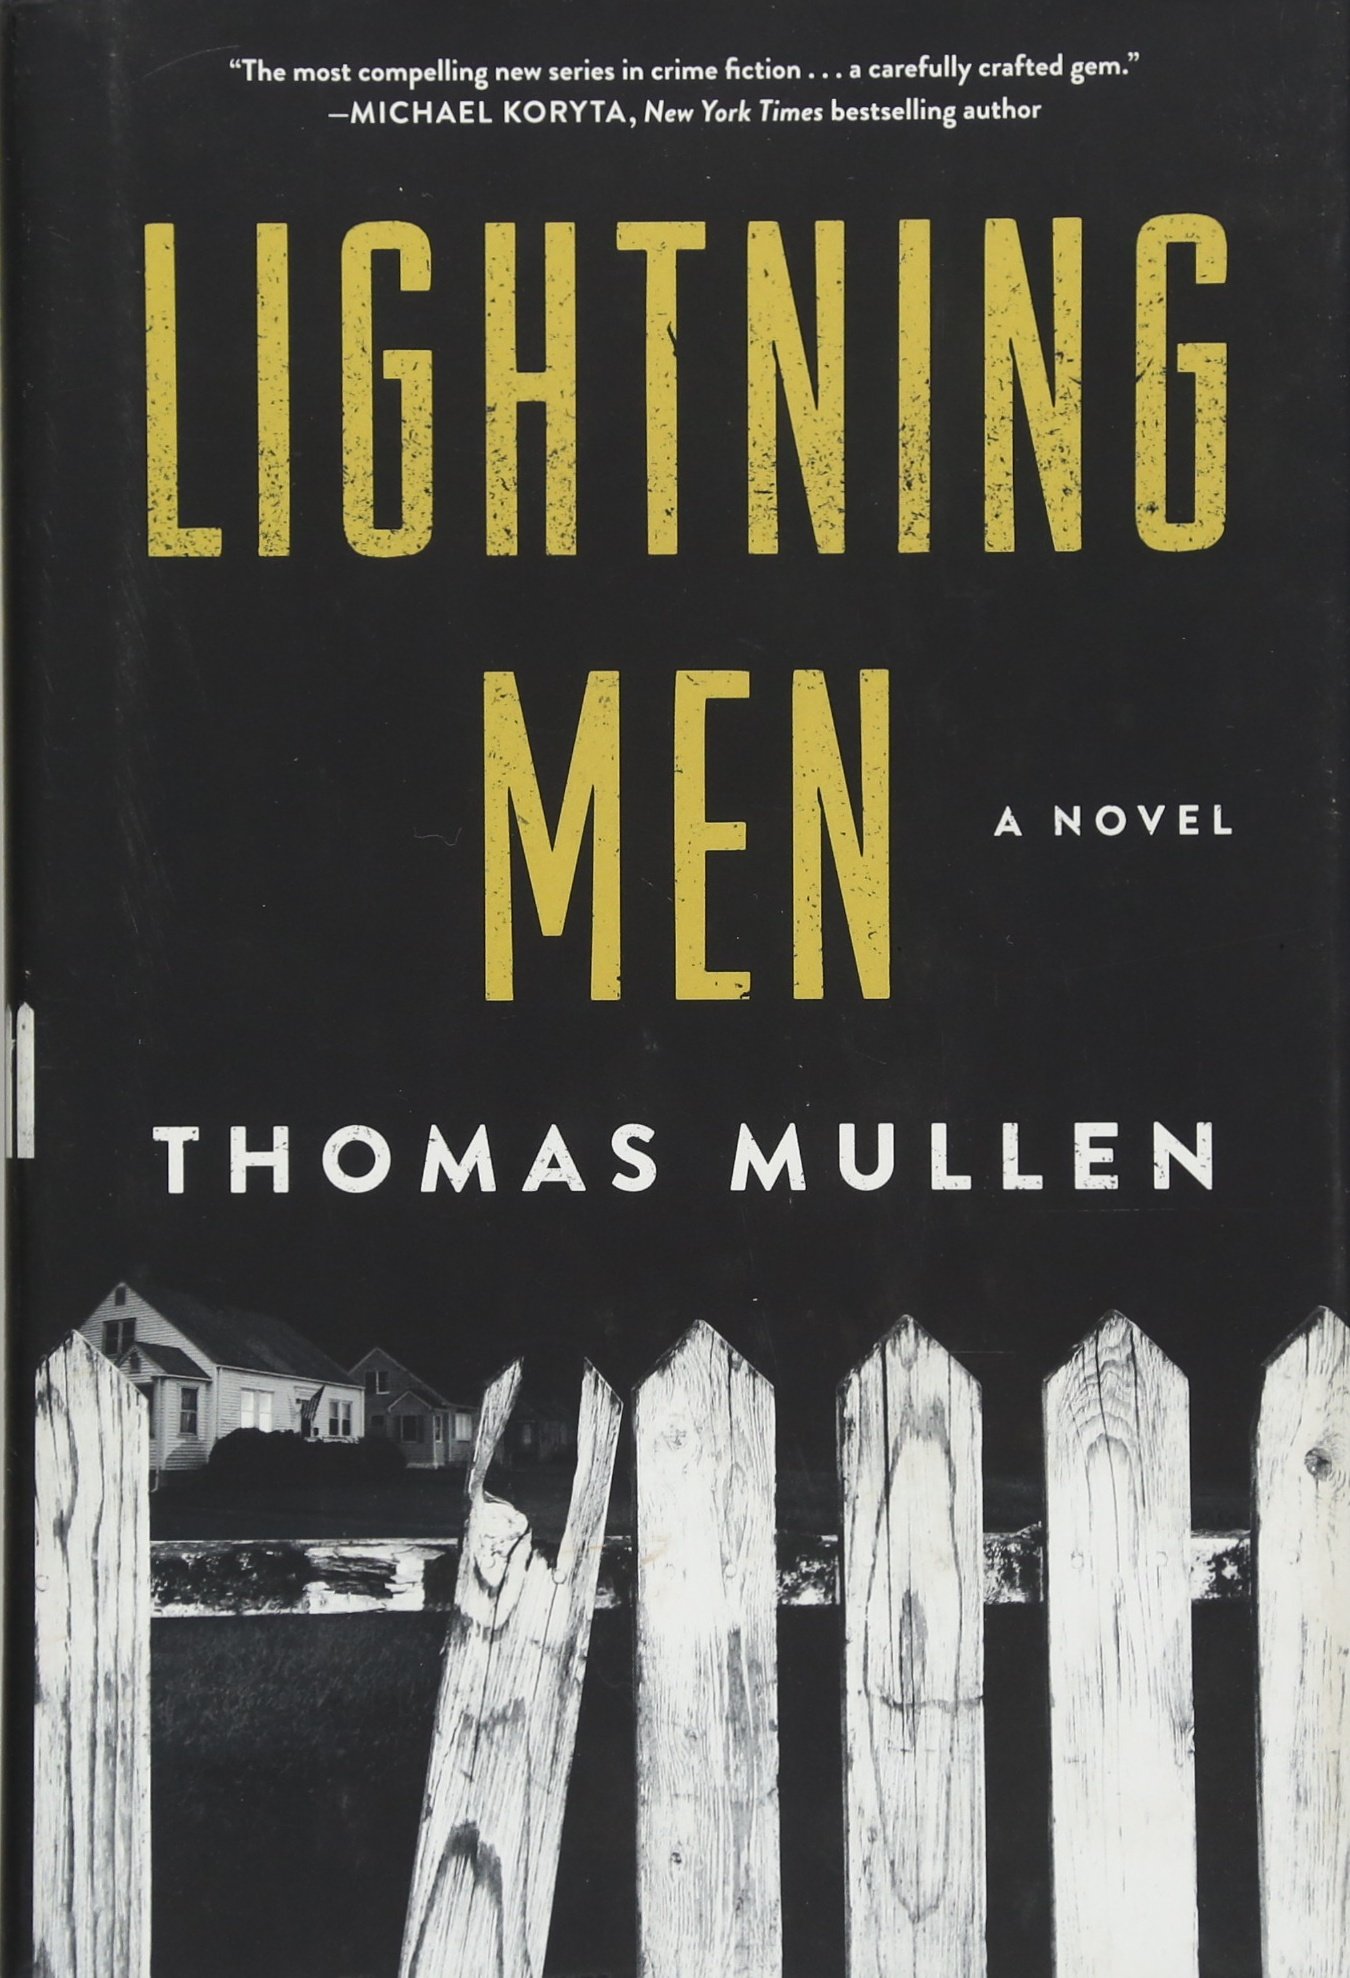 Lightning Men: A Novel